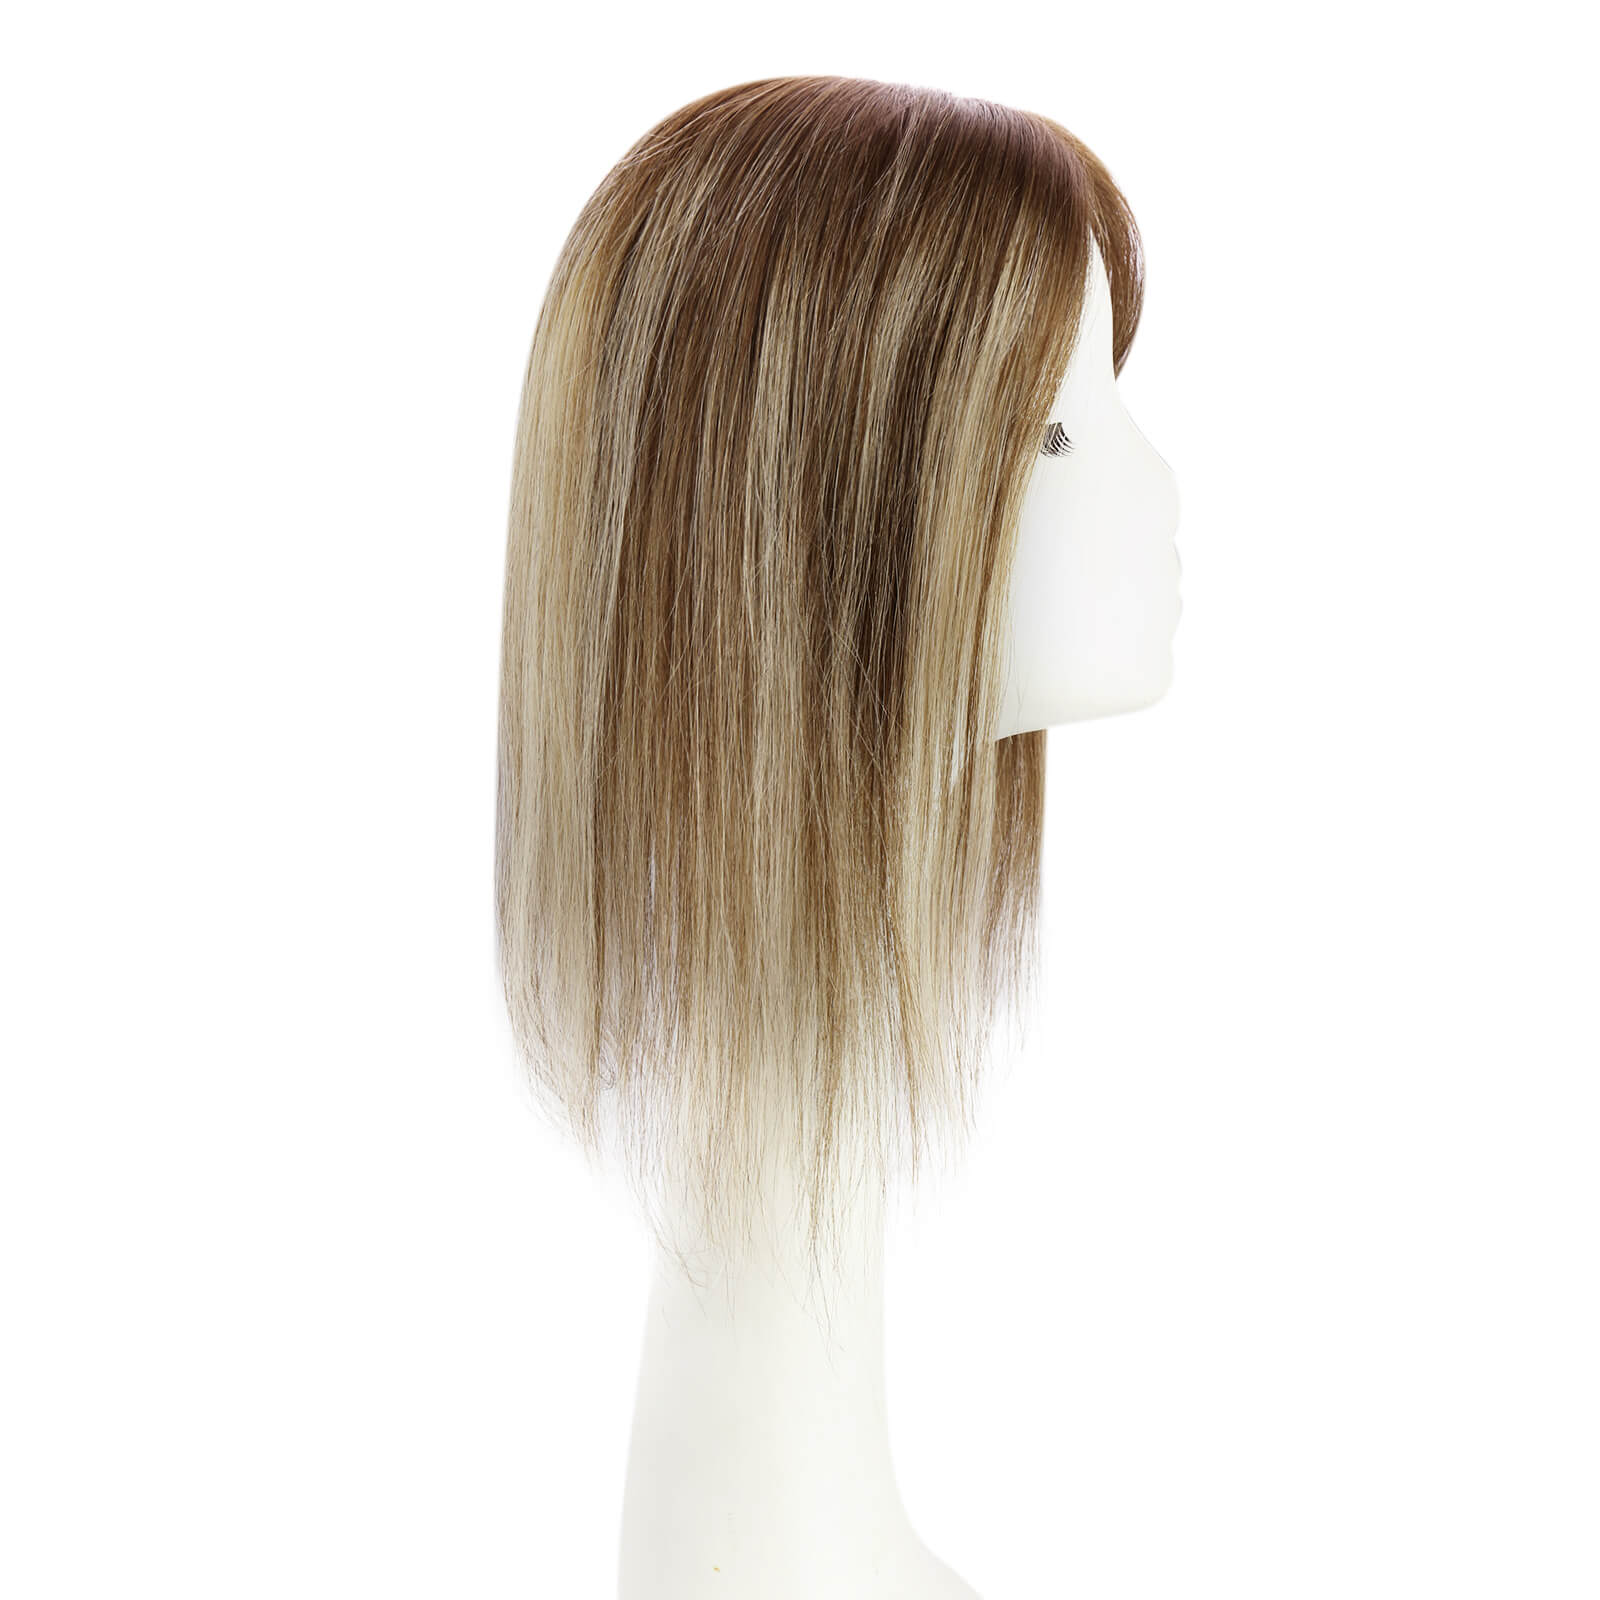 hair topper silk base Mono Topperhuman hair topperhigh quality virgin hair extensionshair topper womenhair topper wig